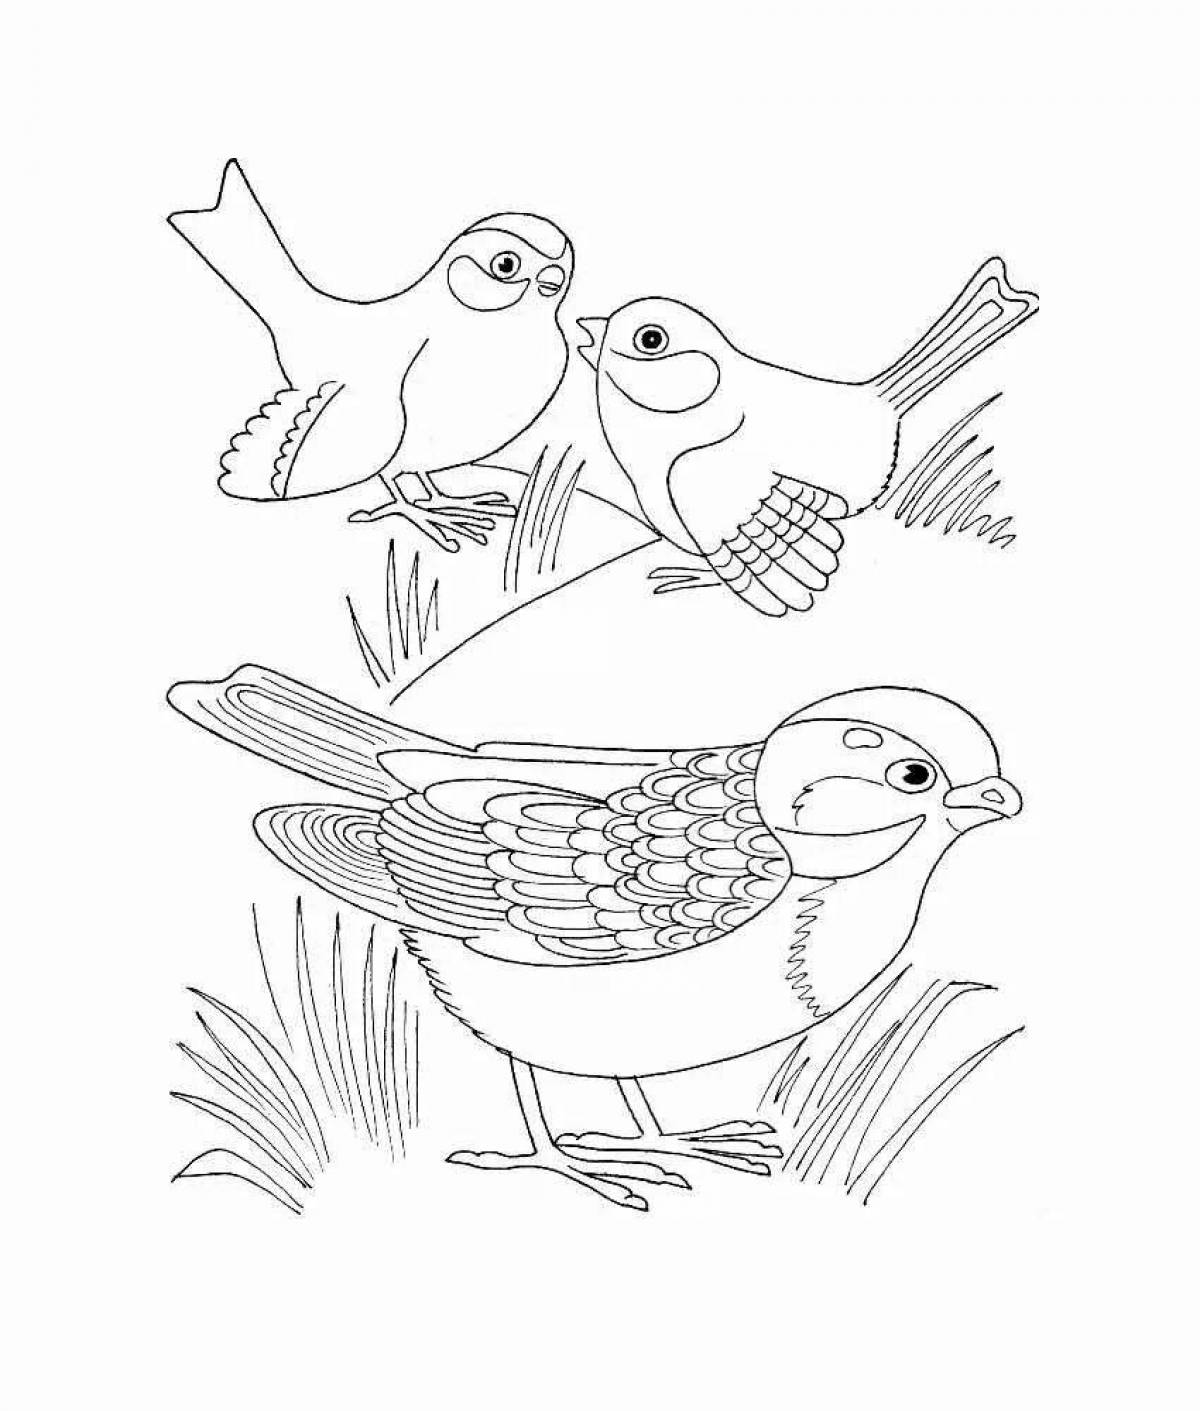 Adorable sparrow coloring book for preschoolers